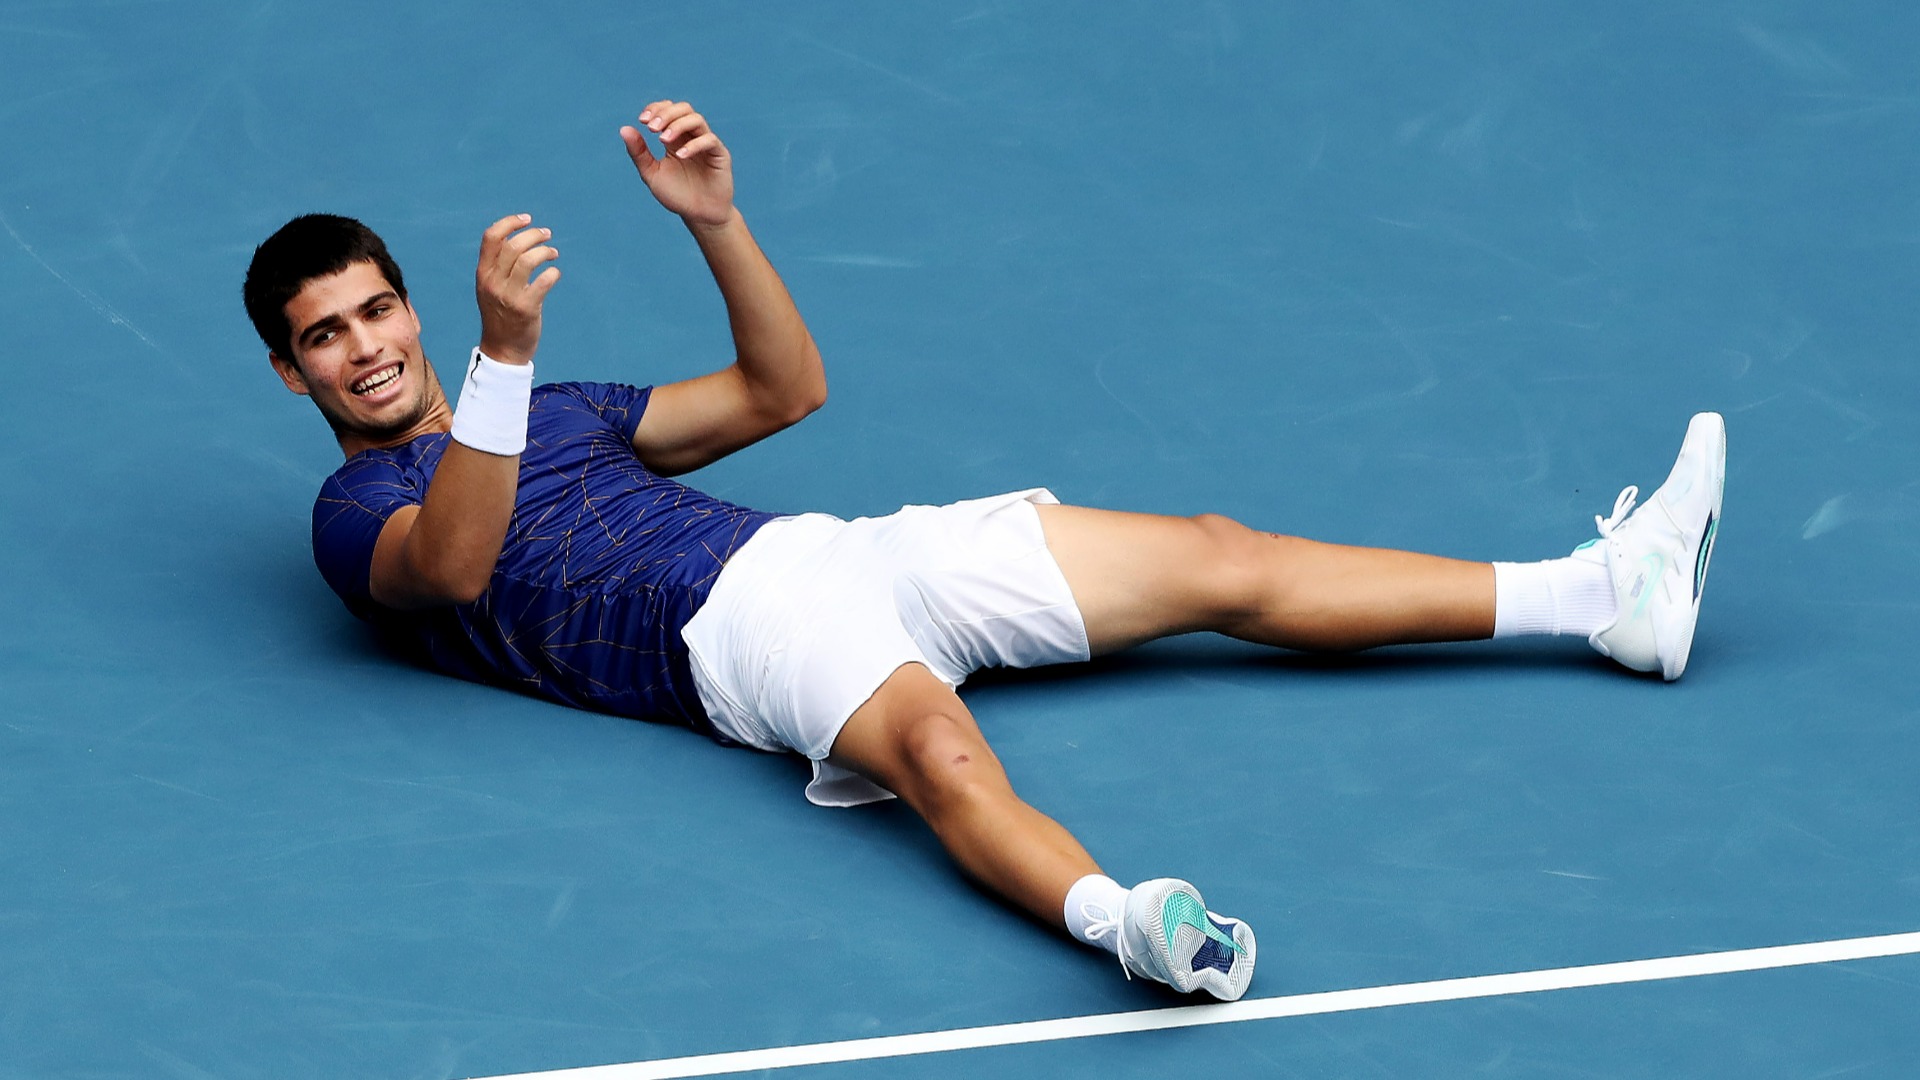 Wimbledon Rybakina roars into first slam final with stunning upset of